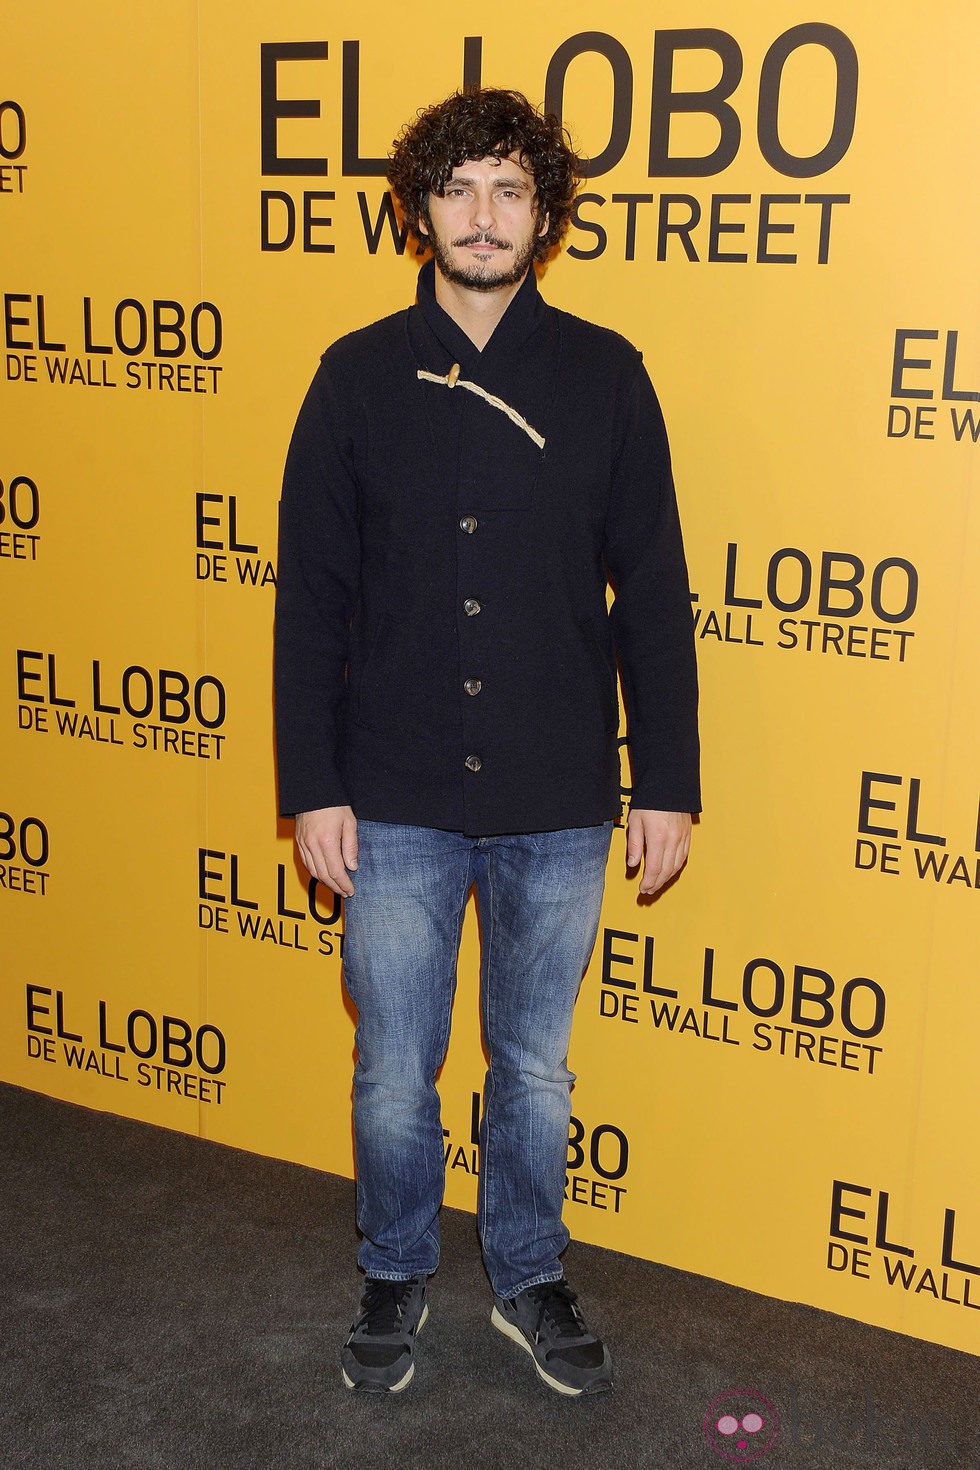 Antonio Pagudo en el estreno de 'El lobo de Wall Street' en Madrid